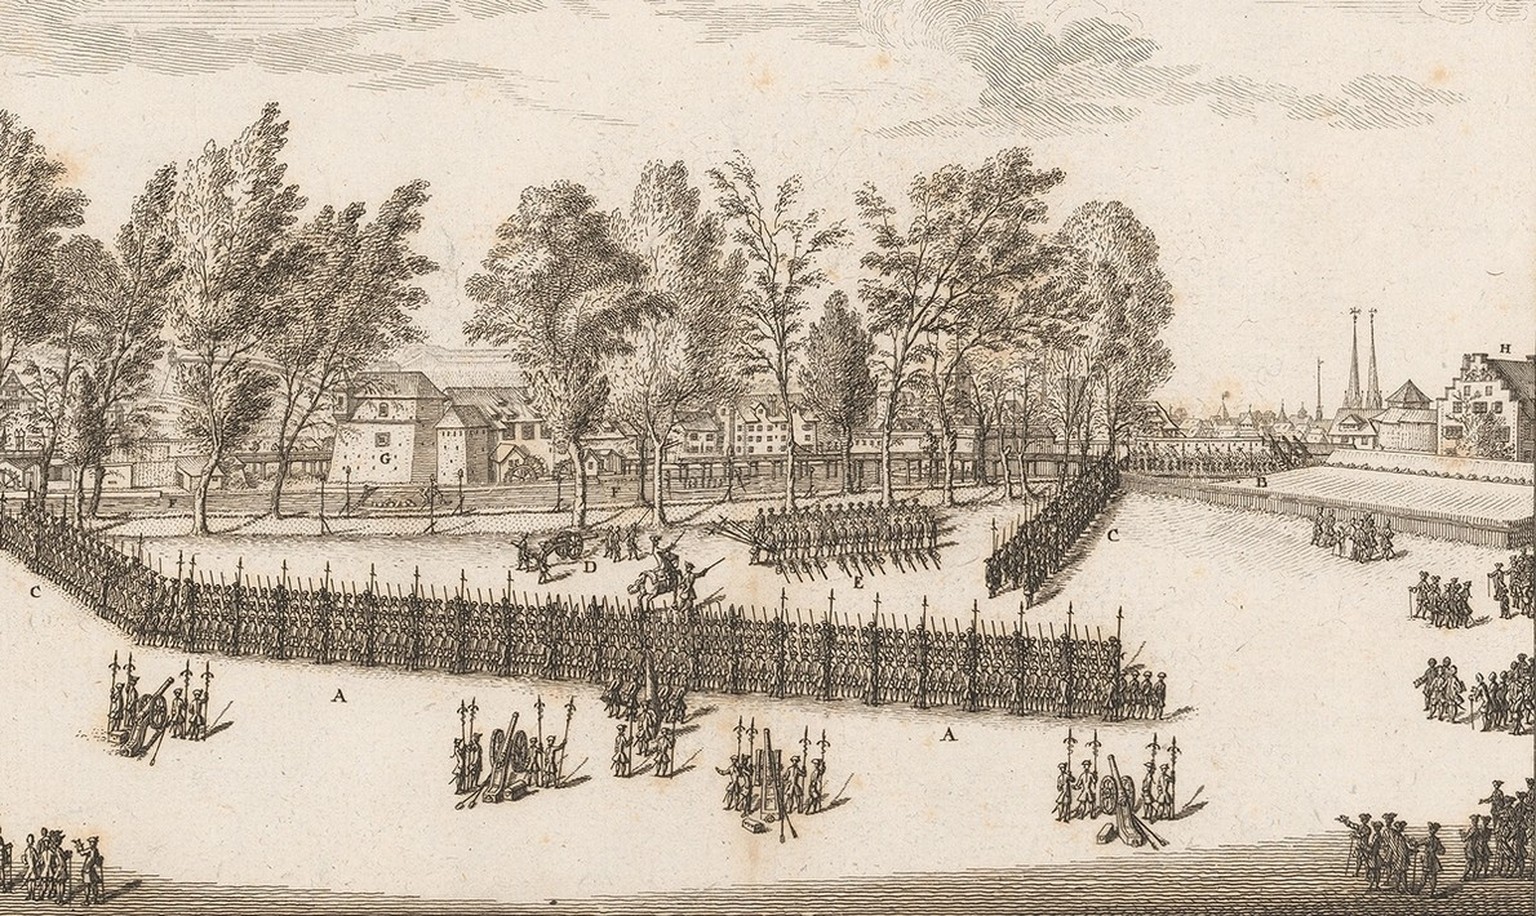 Exercice militaire sur le Platzspitz à Zurich, 1758.
https://www.e-rara.ch/zuz/doi/10.3931/e-rara-65146